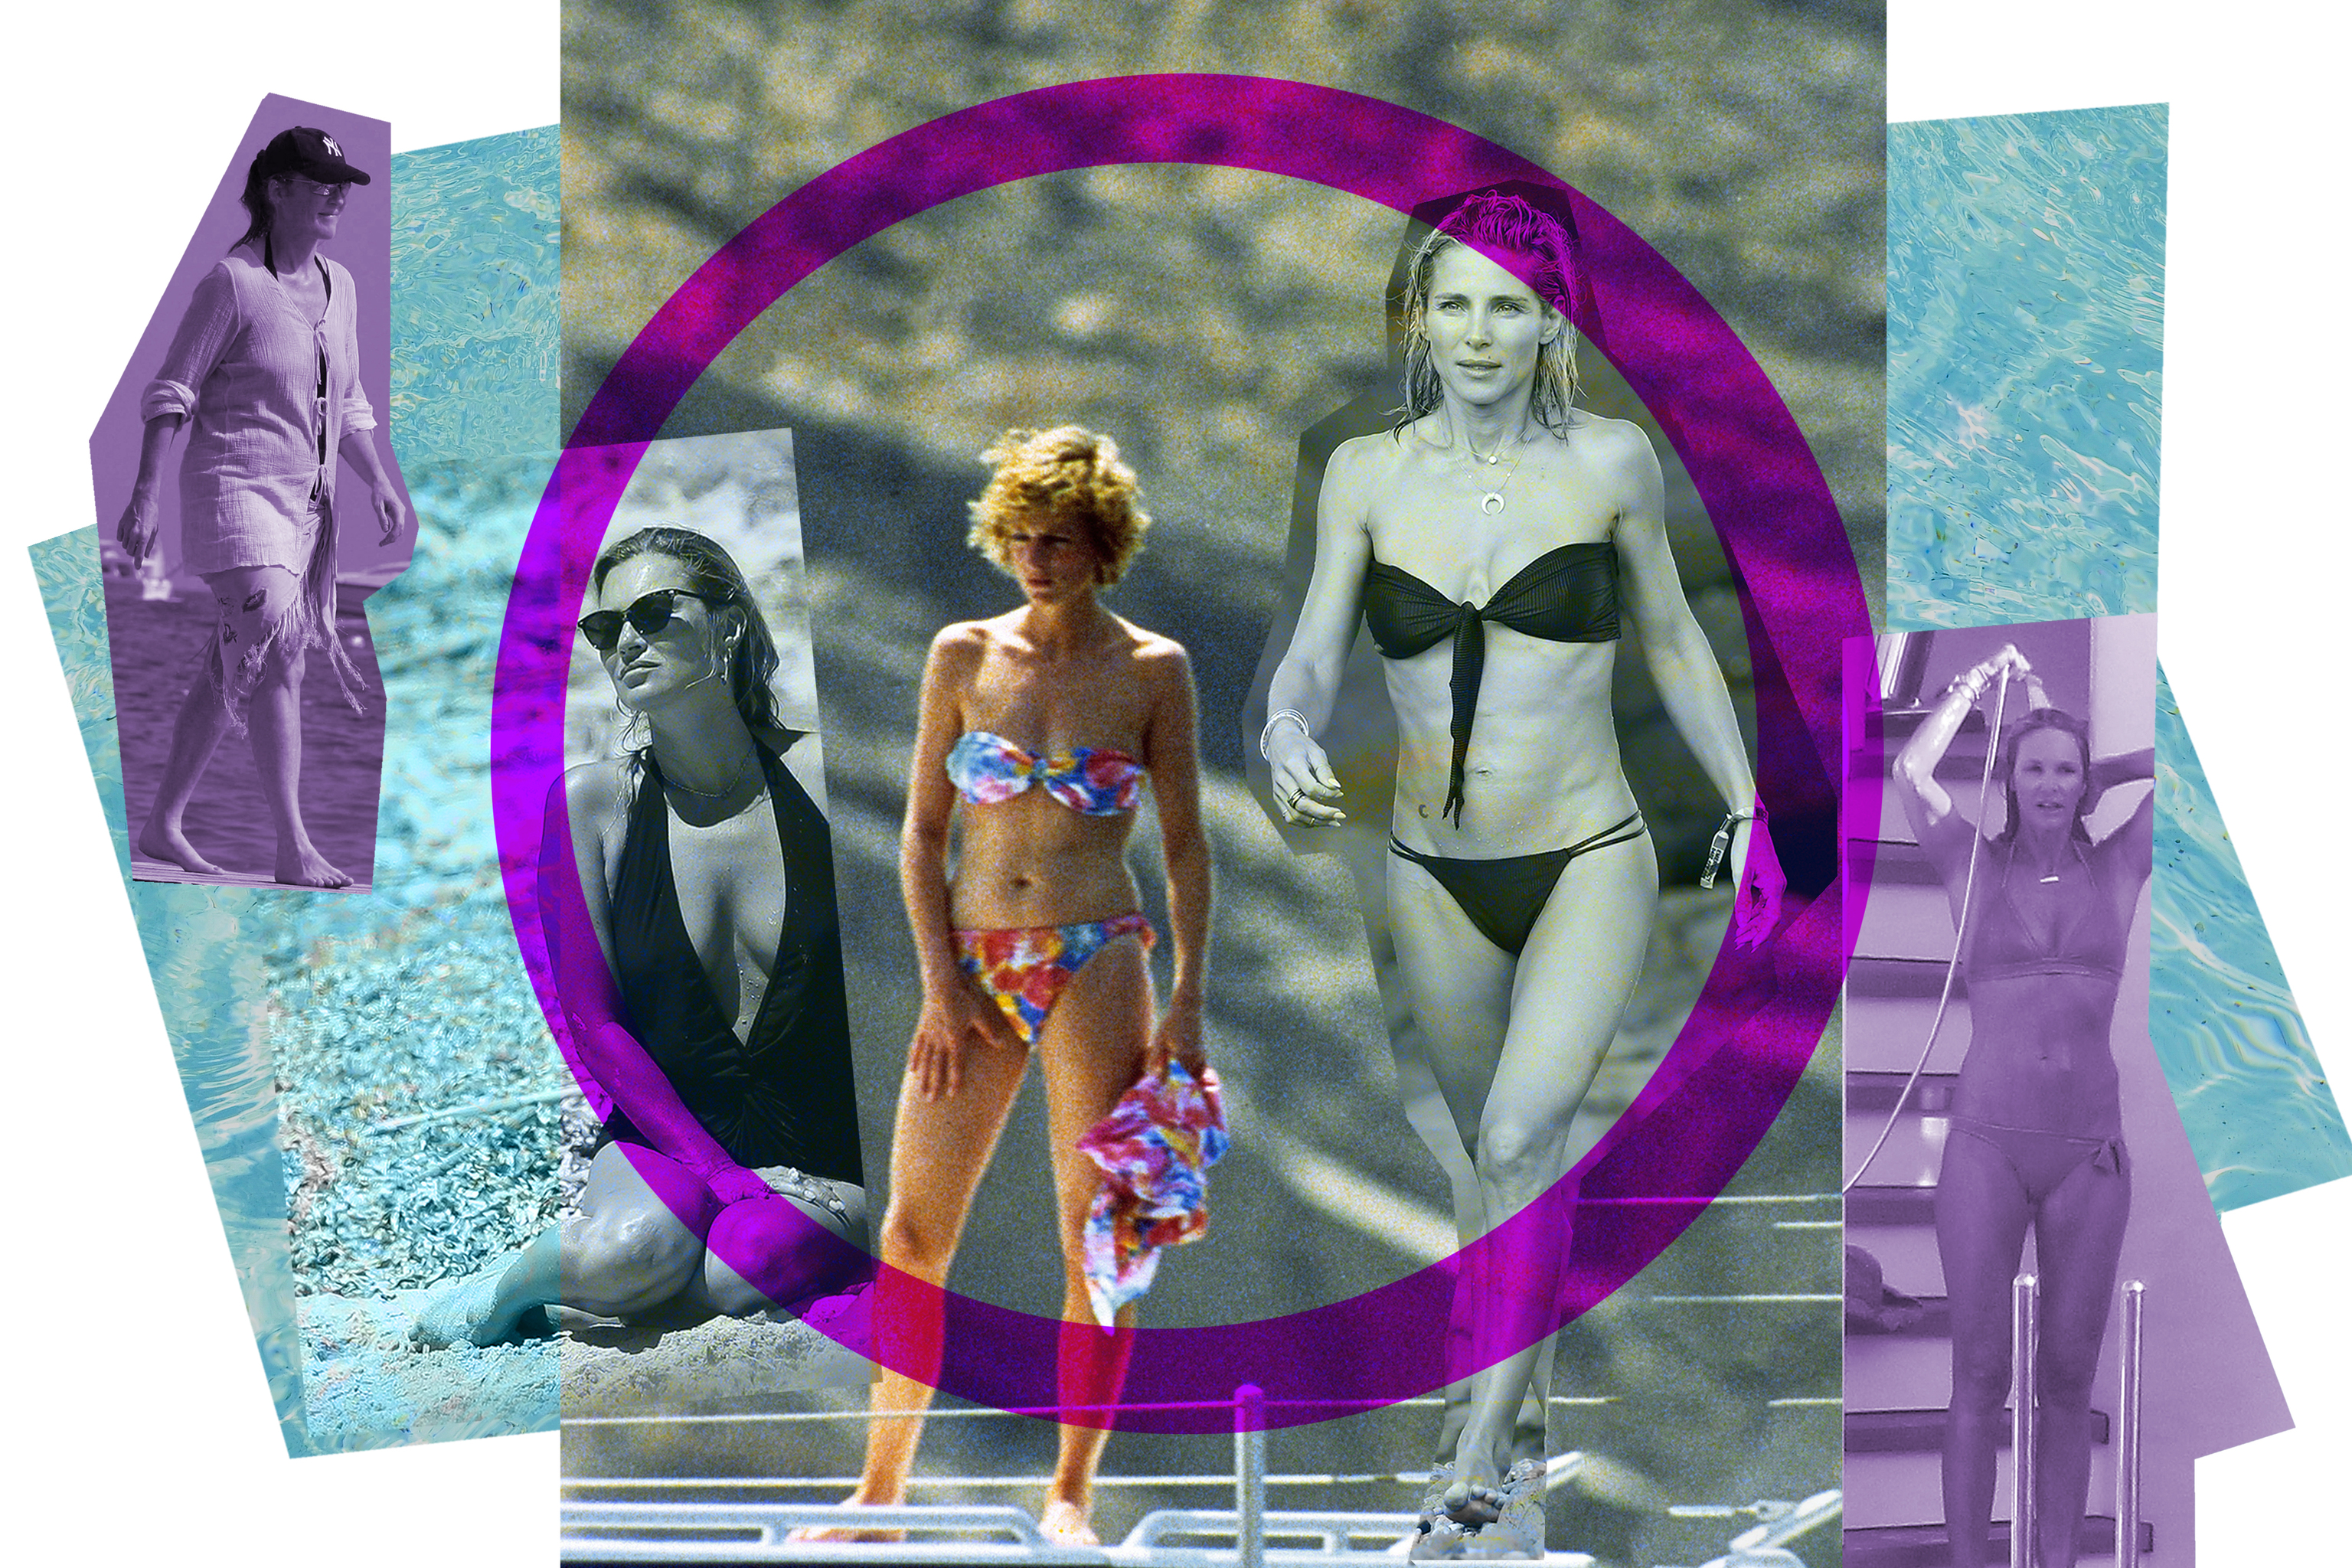 Objetivo indiscreto: famosas pilladas desnudas en playas, piscinas y yates (y las consecuencias millonarias)